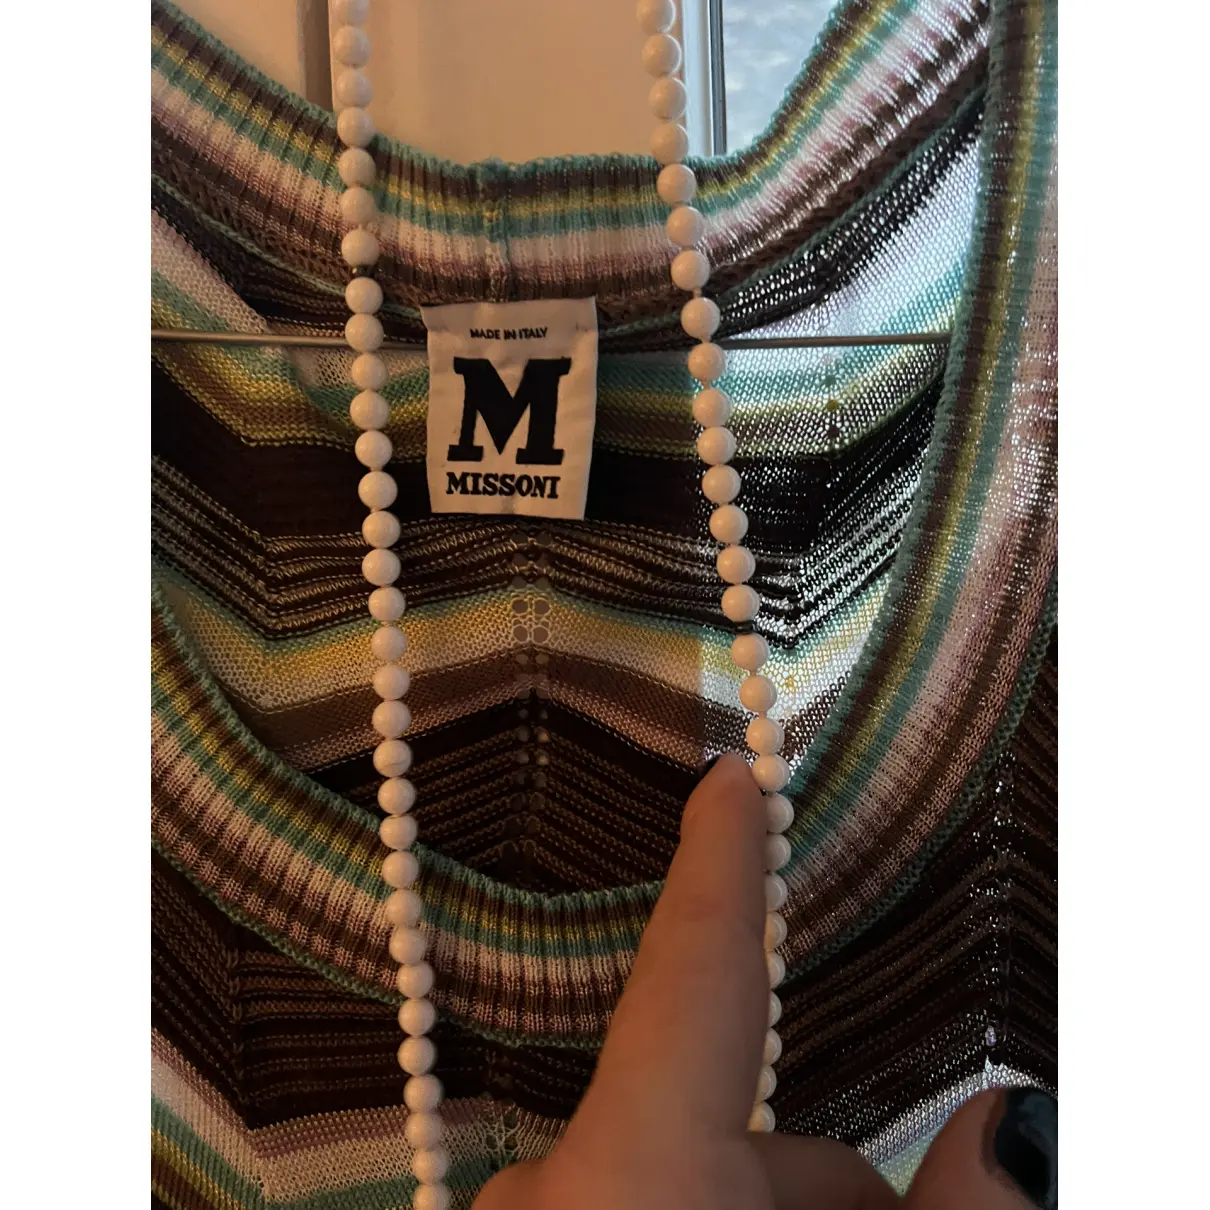 Buy M Missoni Mini dress online